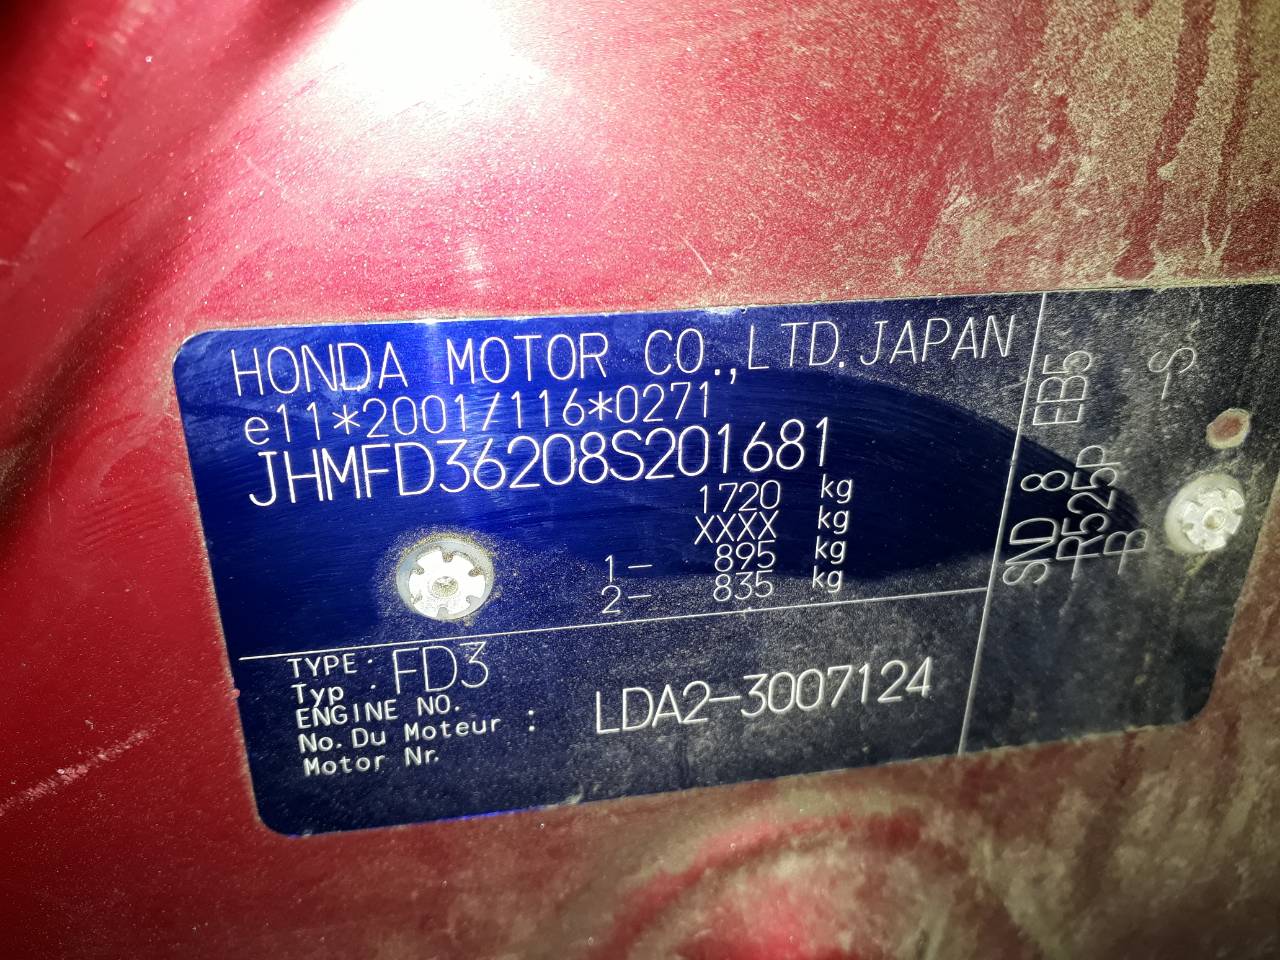 Vin номер honda. Маркировочная табличка Хонда Цивик 4д. Honda Civic 8 табличка с вин. Honda Civic 4d 2008 VIN. Вин номер зонда Цивик 4д.